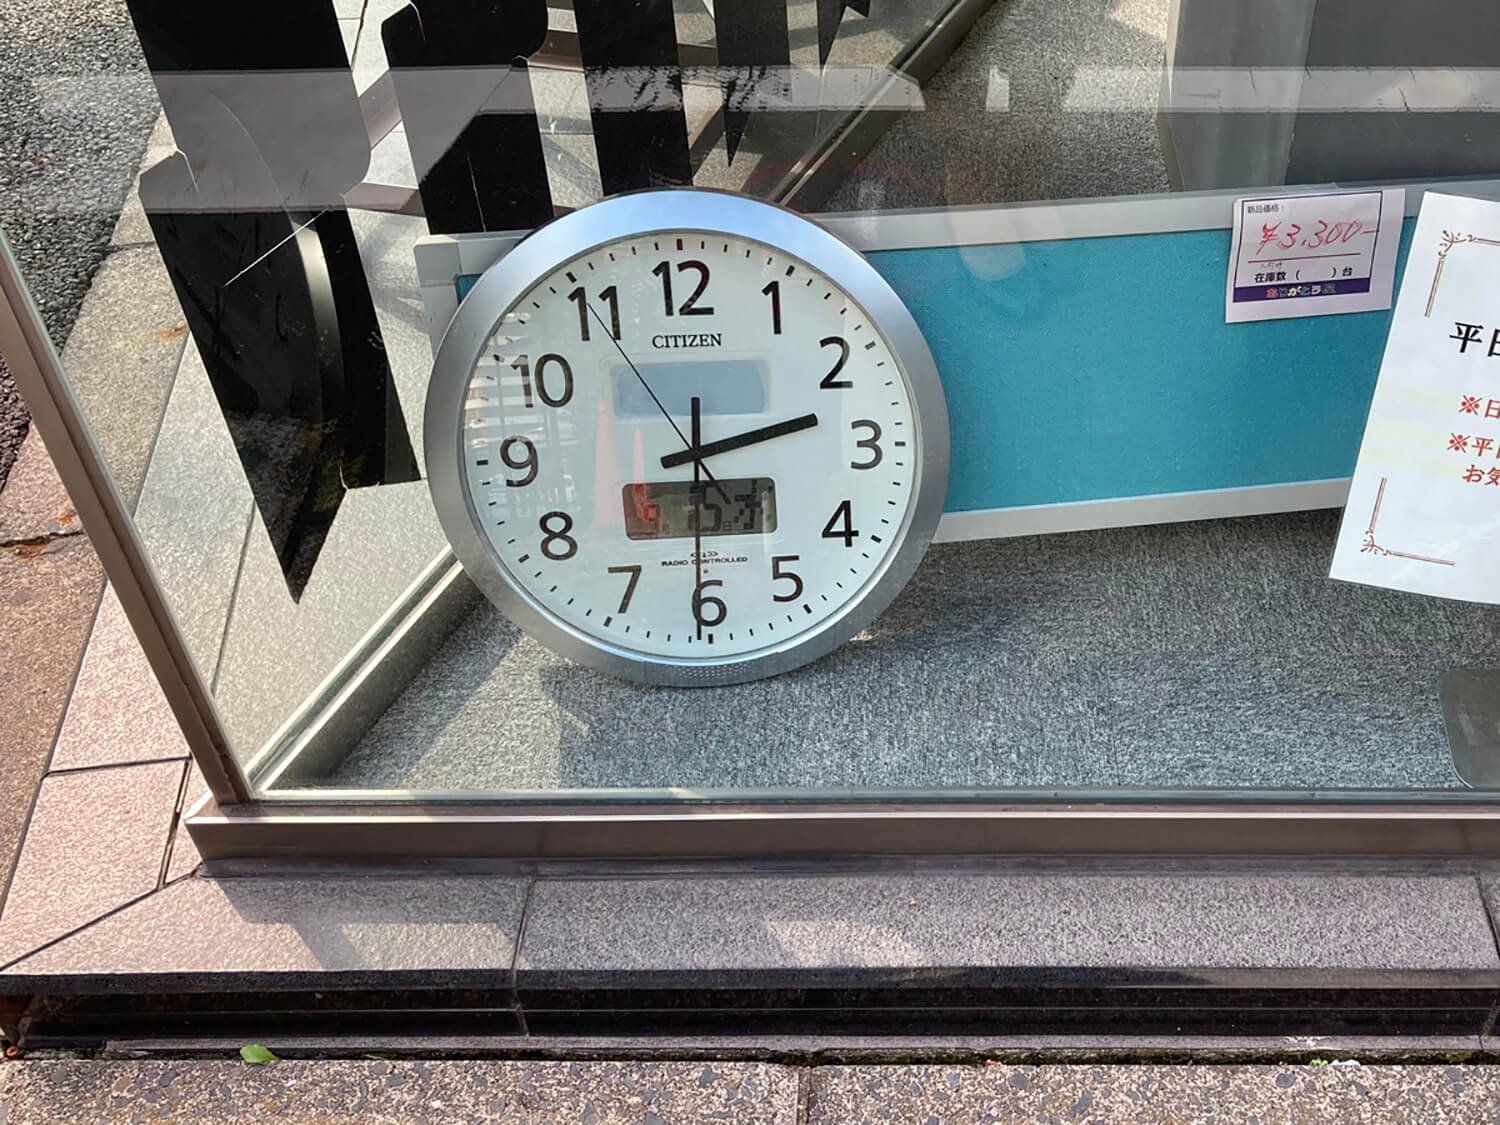 神田の店舗にある時計。外に向けられているからには通行者向けなのだろうが、なぜ床に置かれているのだろう。